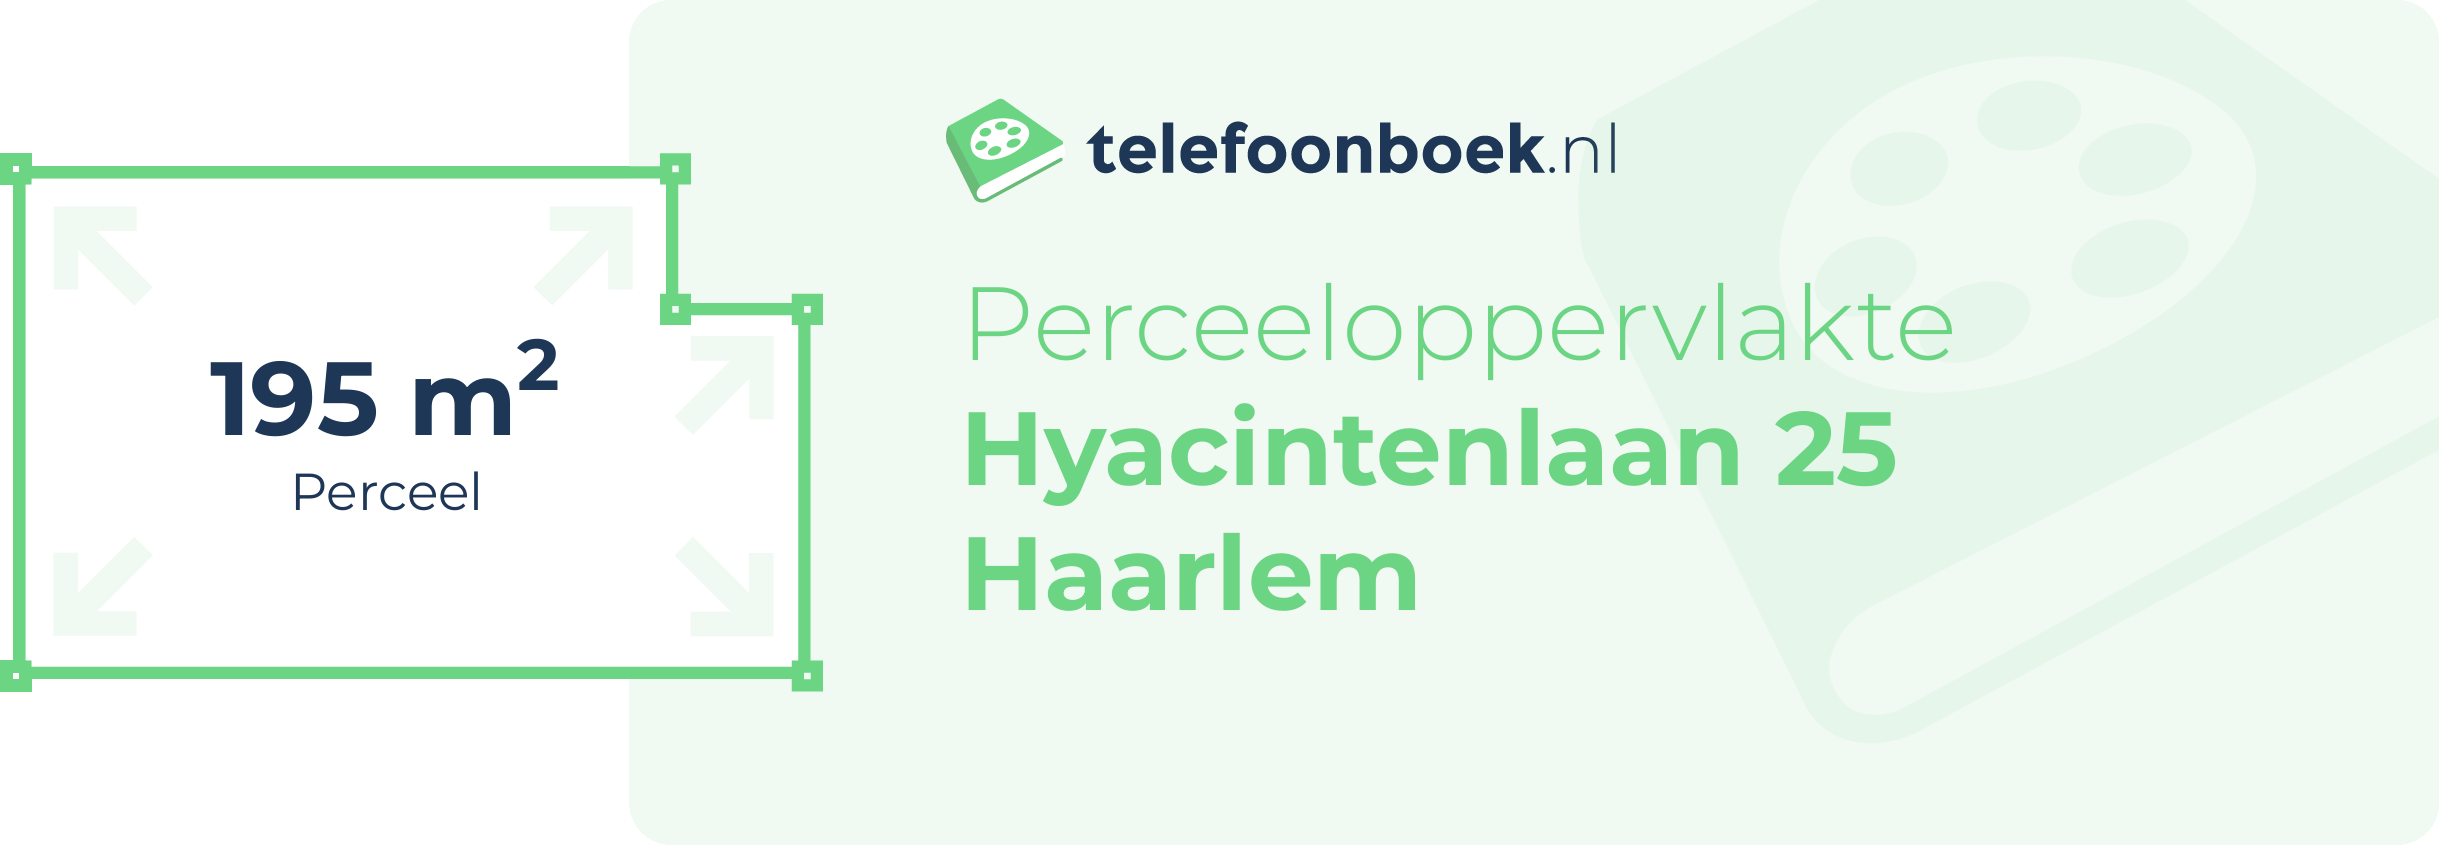 Perceeloppervlakte Hyacintenlaan 25 Haarlem